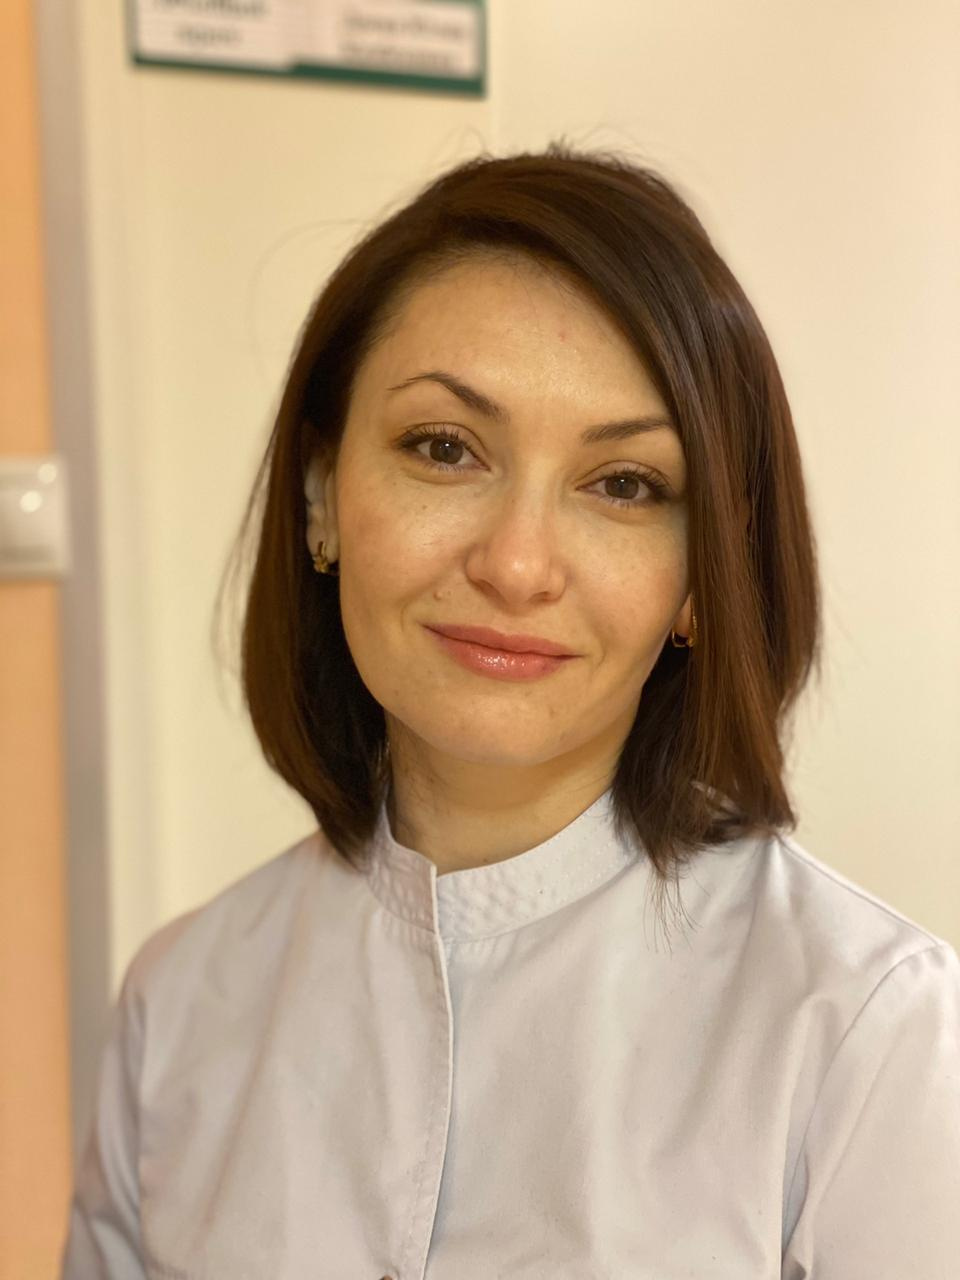 Юлия Доева — заведующая отделением терапии в 40-й больнице. Она надеется, что в 2021 году медики смогут хотя бы немного выдохнуть